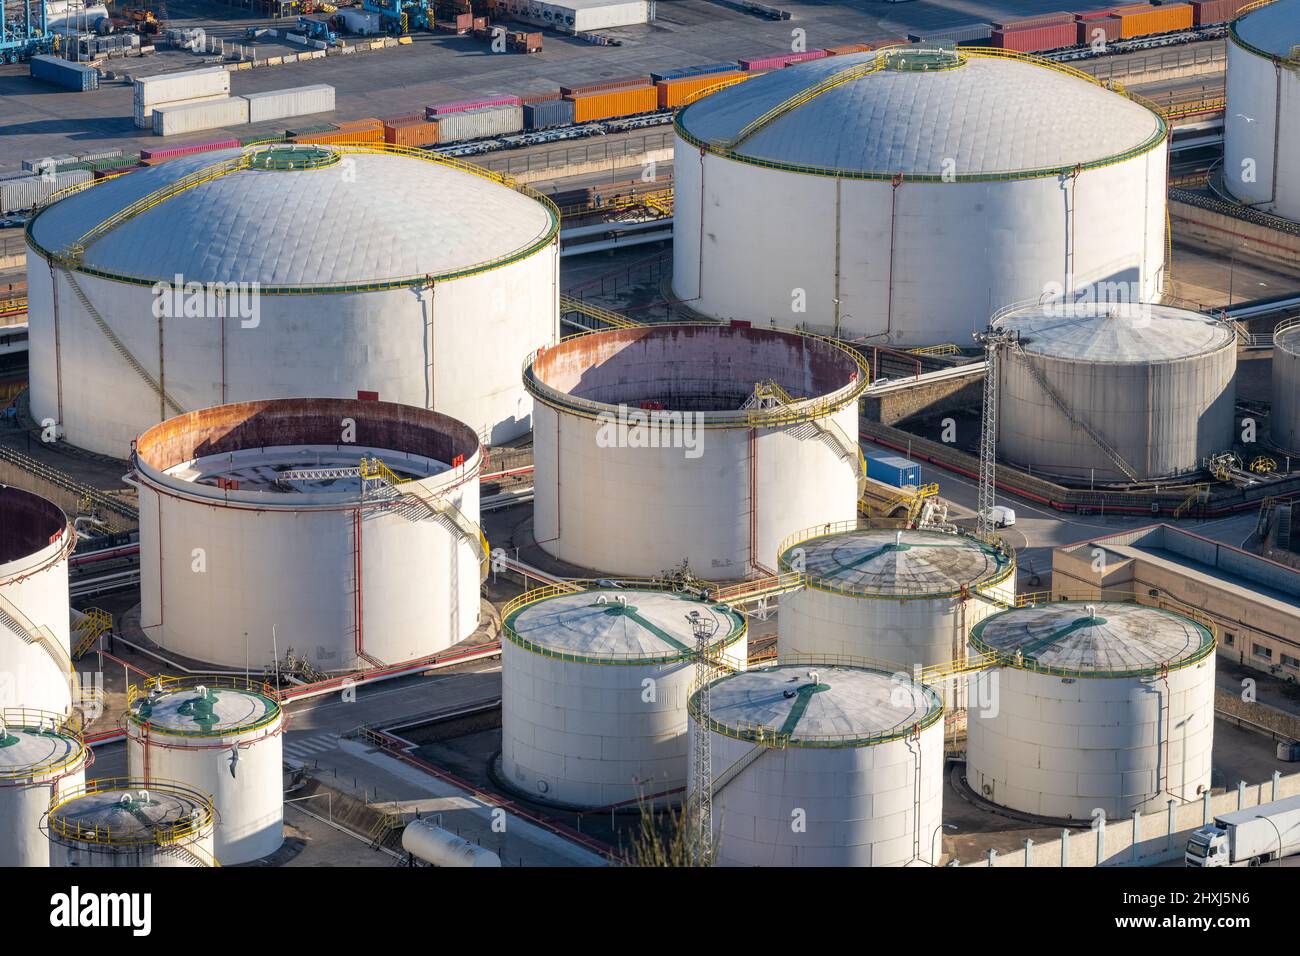 Réservoirs de stockage du pétrole brut vus dans le port commercial de Barcelone Banque D'Images